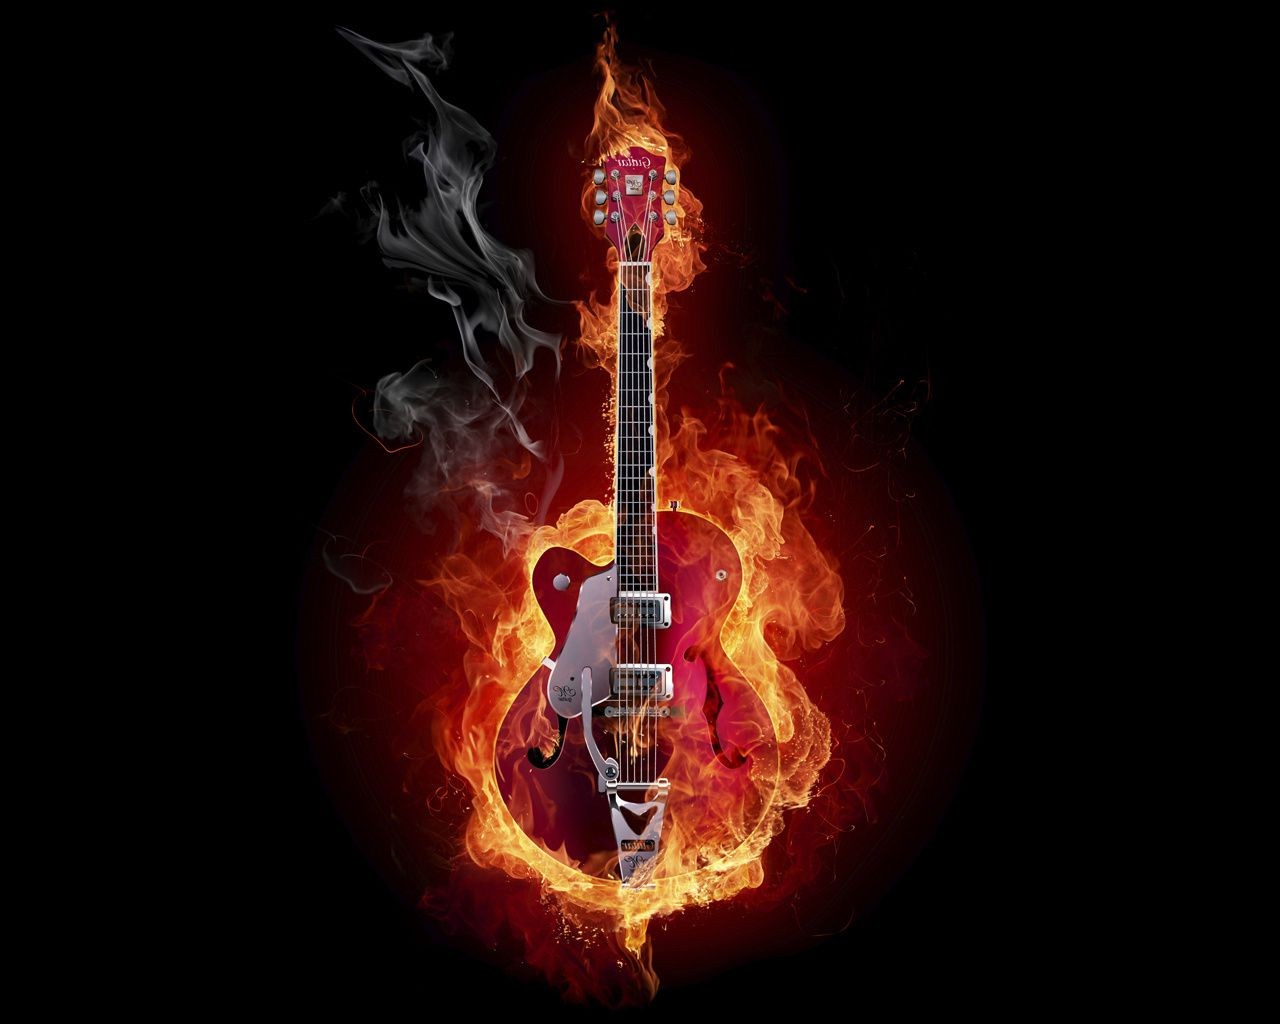 огненные горячая пламя тепло легковоспламеняющиеся блейз сжечь опасность музыка сожгли дым машинопись звук